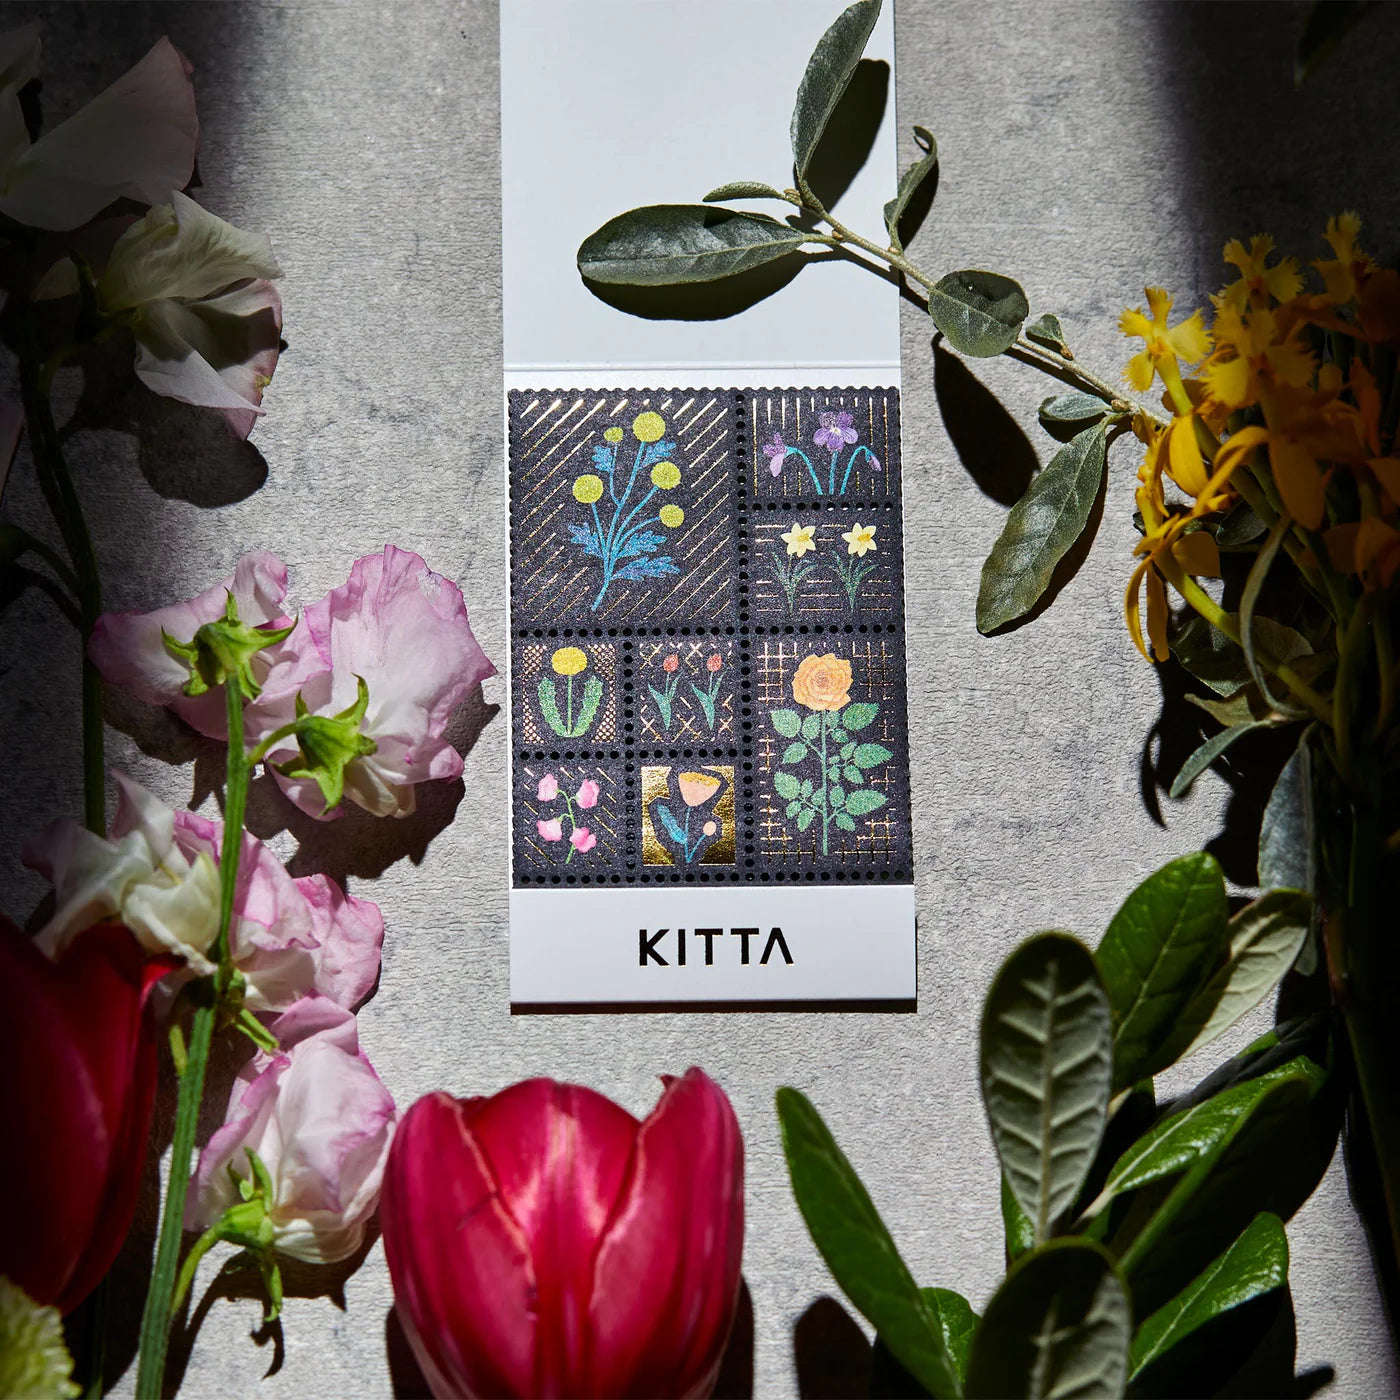 KITTA Stamp Washi Tape - Flower · King Jim